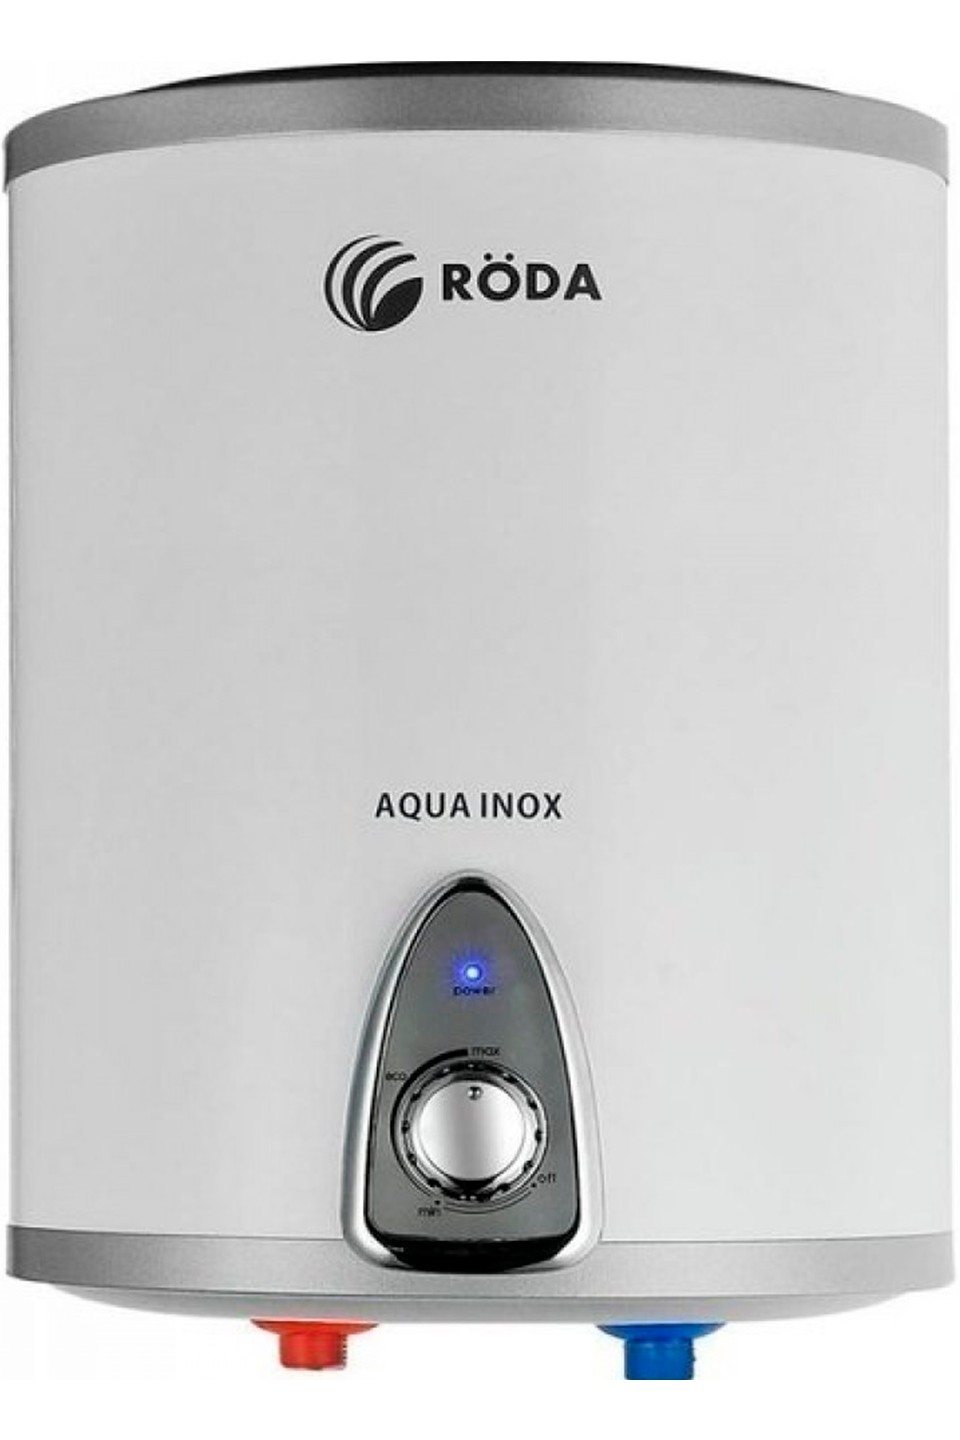 Отзывы бойлер roda на 10 литров Roda Aqua Inox 10 V в Украине